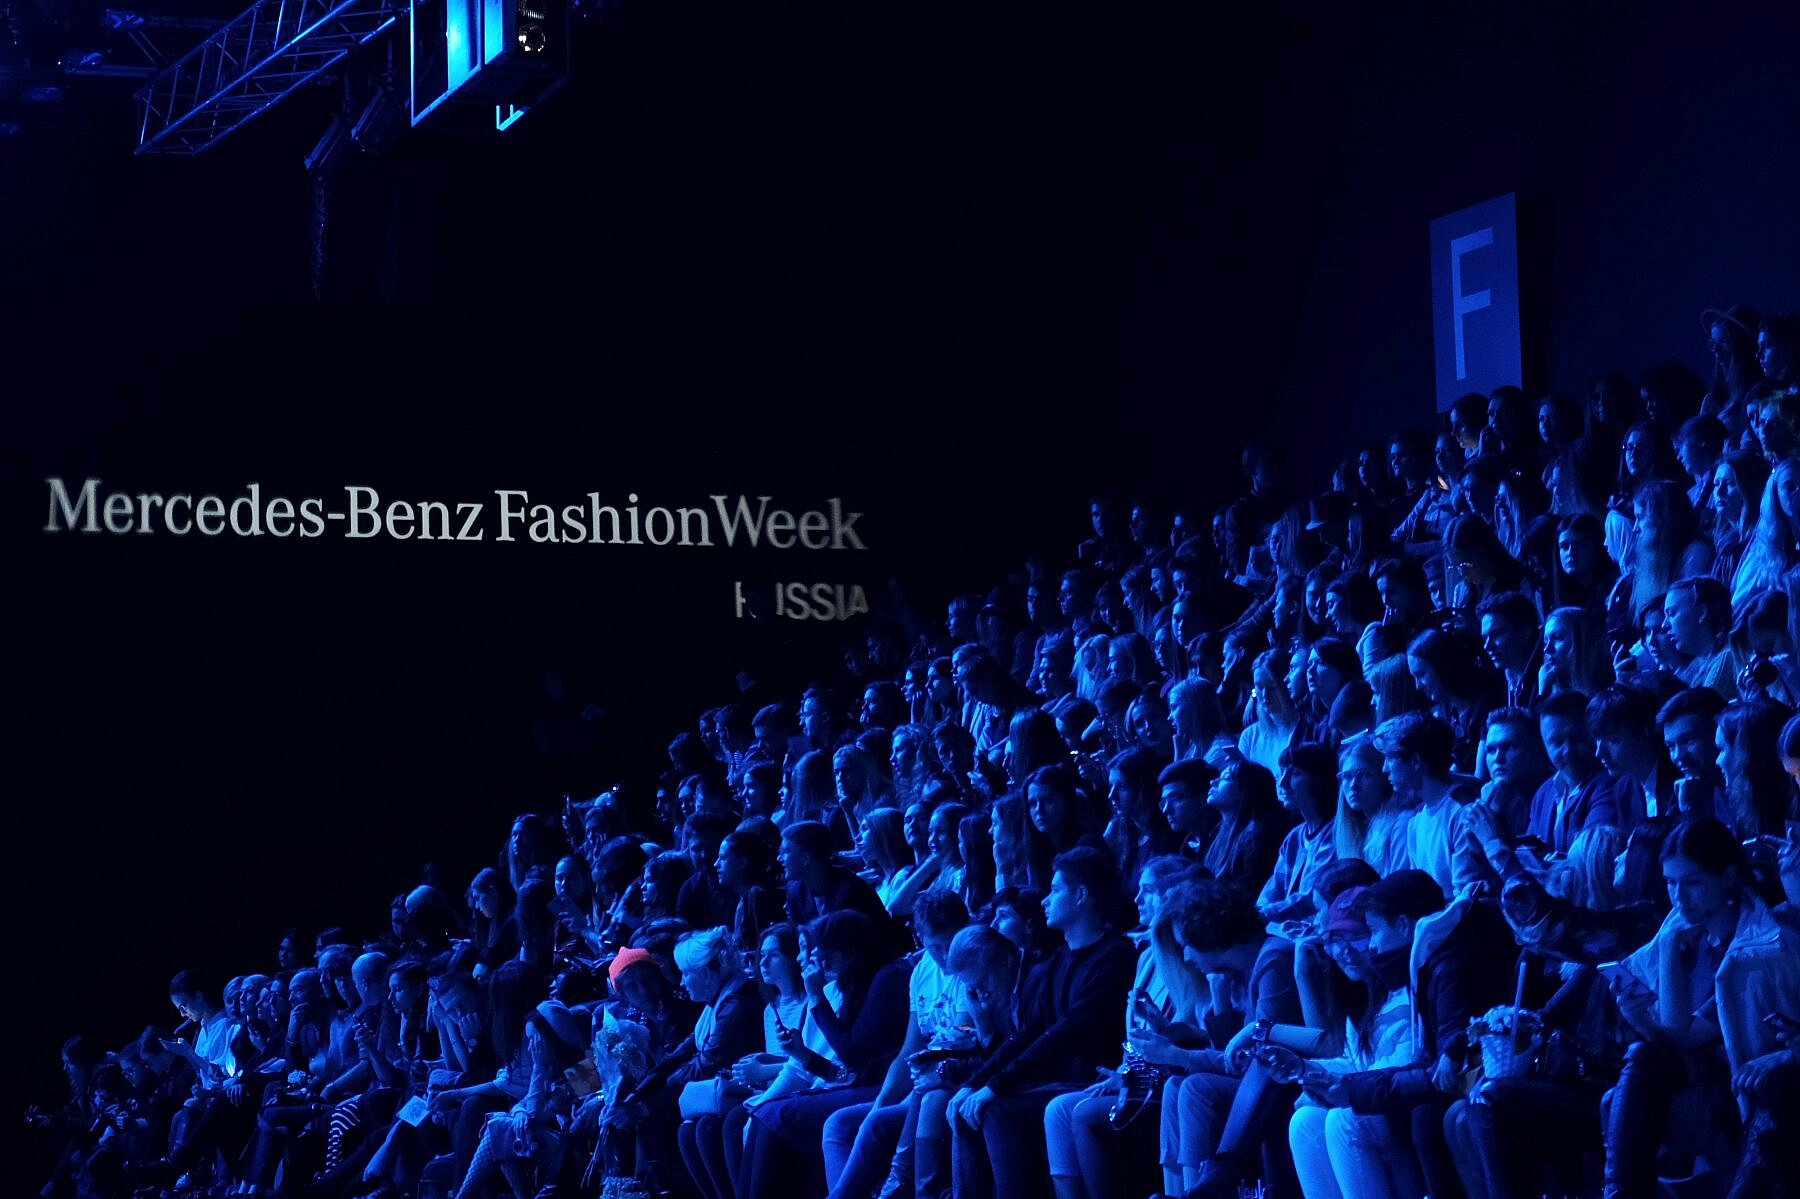 Mercedes-Benz Fashion Week Russia стала финалистом двух международных премий в области социальных медиа и Digital-технологий